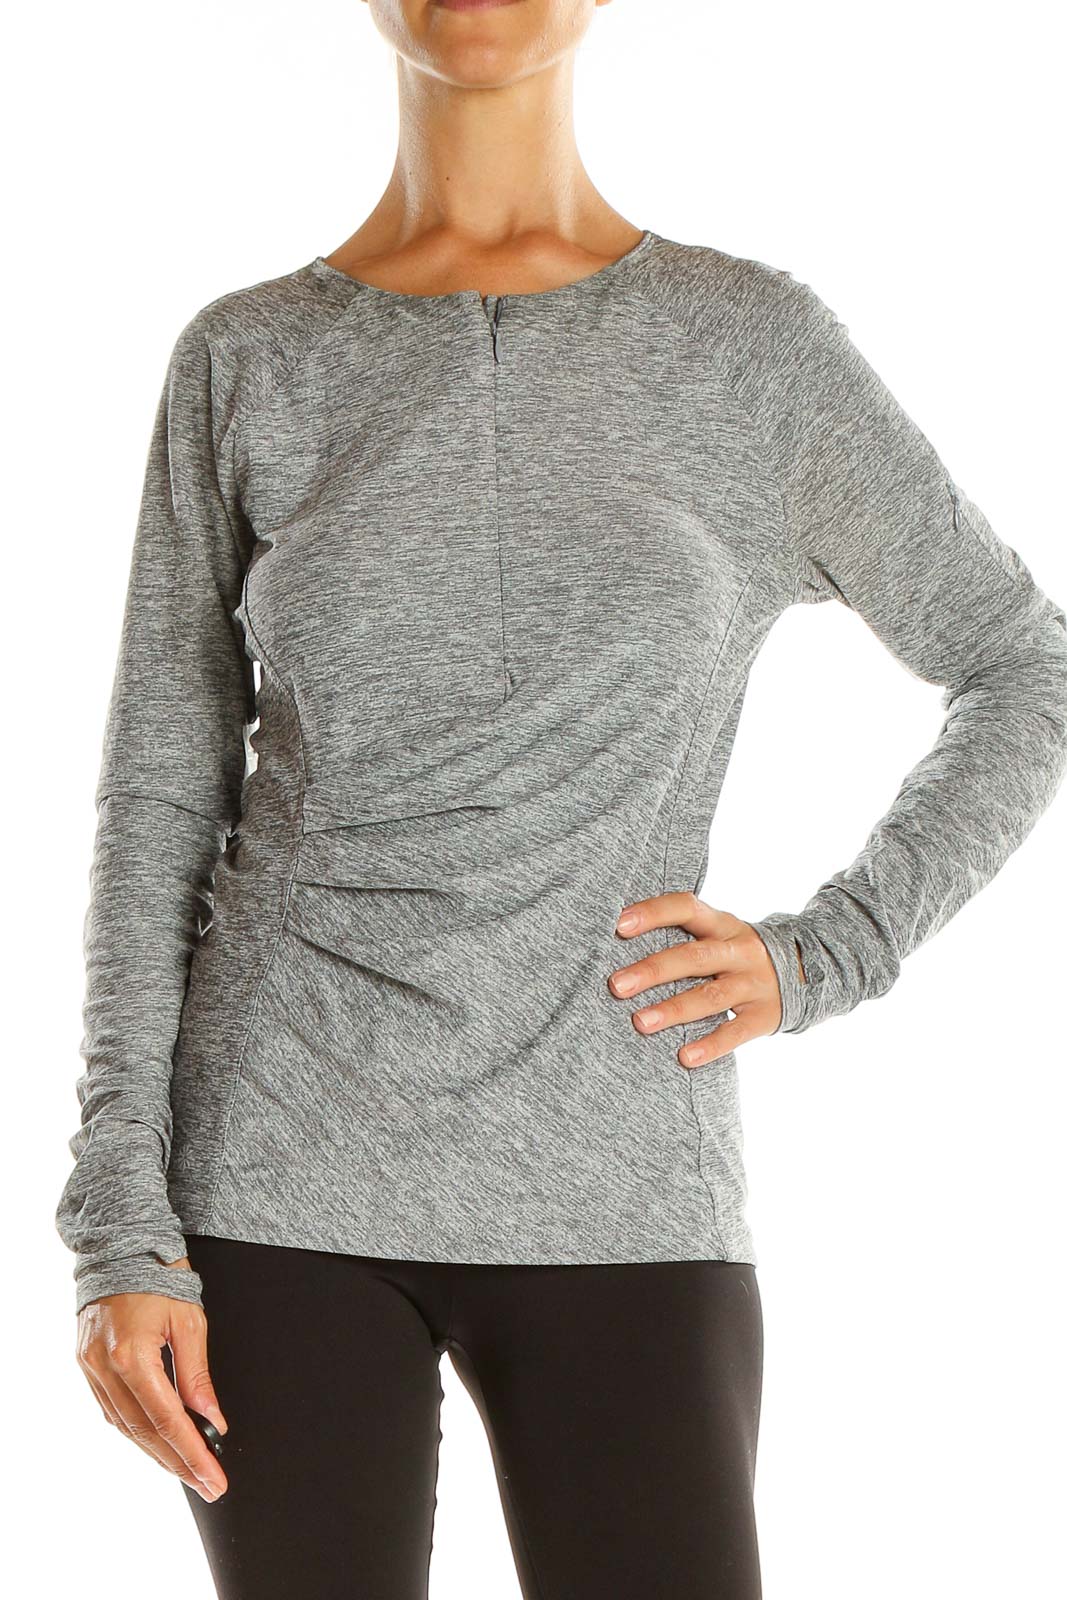 Gray Activewear Light Sweatshirt Front